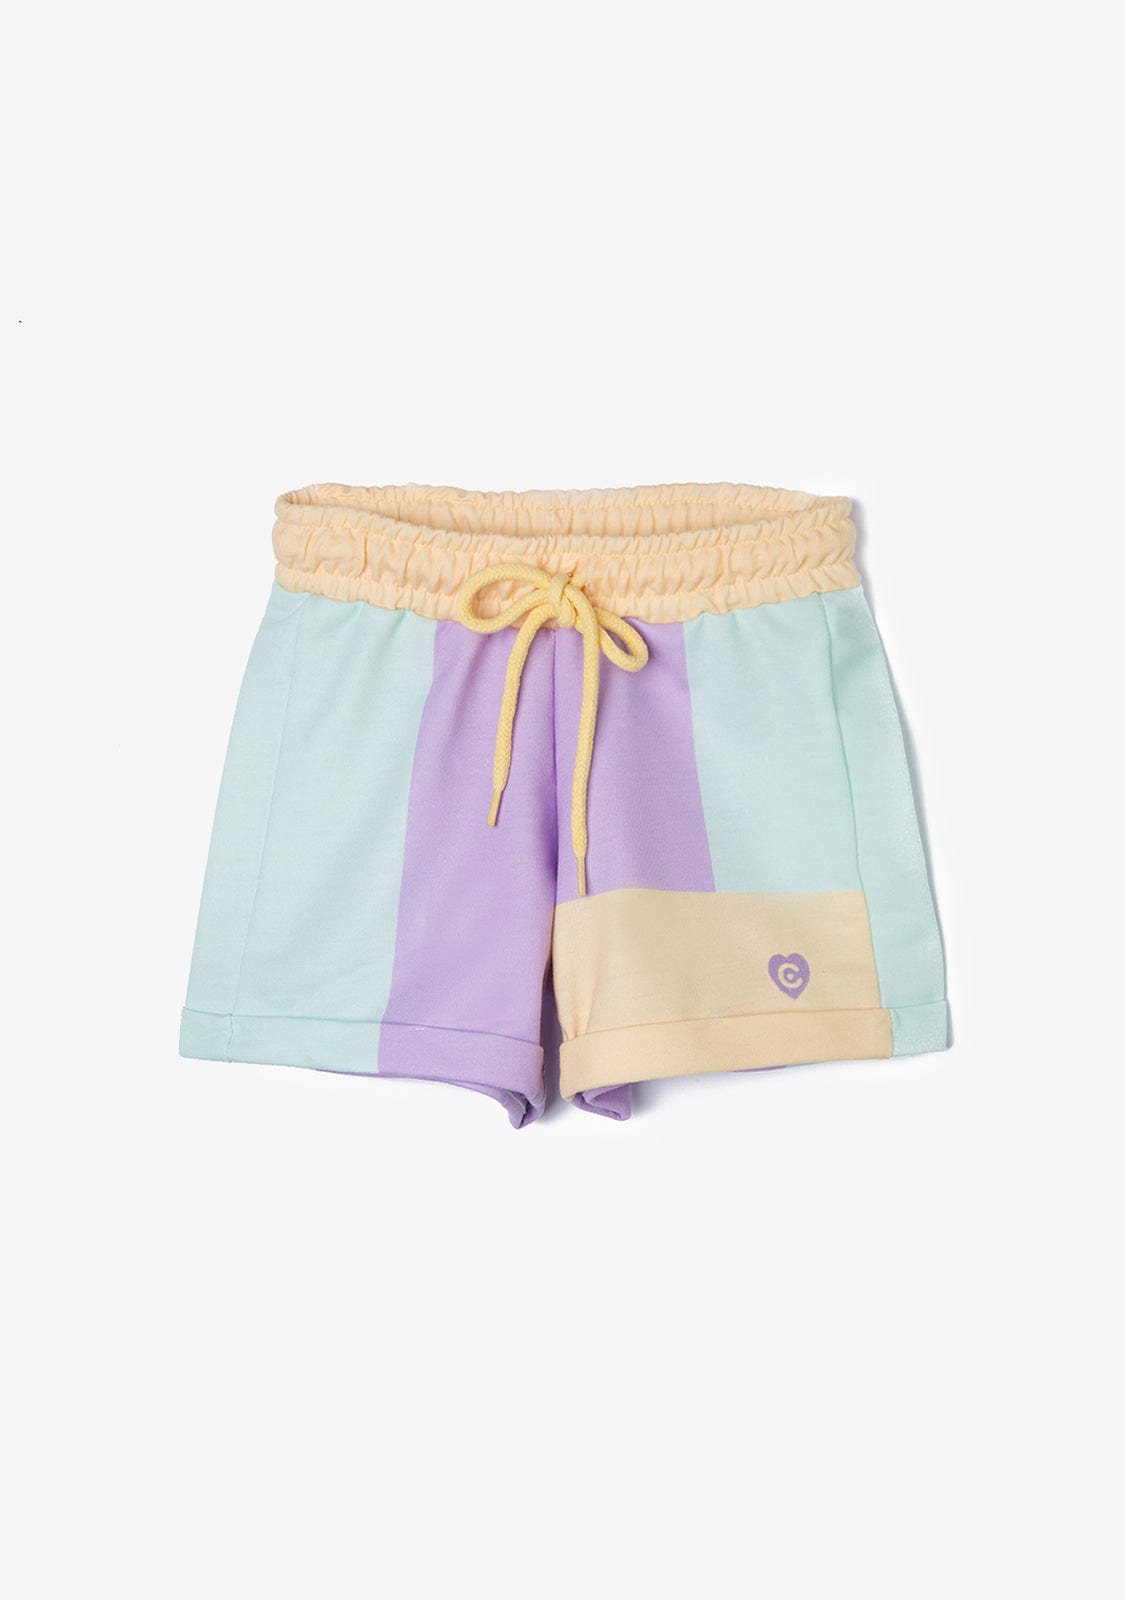 CONGUITOS TEXTIL Clothing Girl's Multicolor Patchwork Plush Plain Shorts